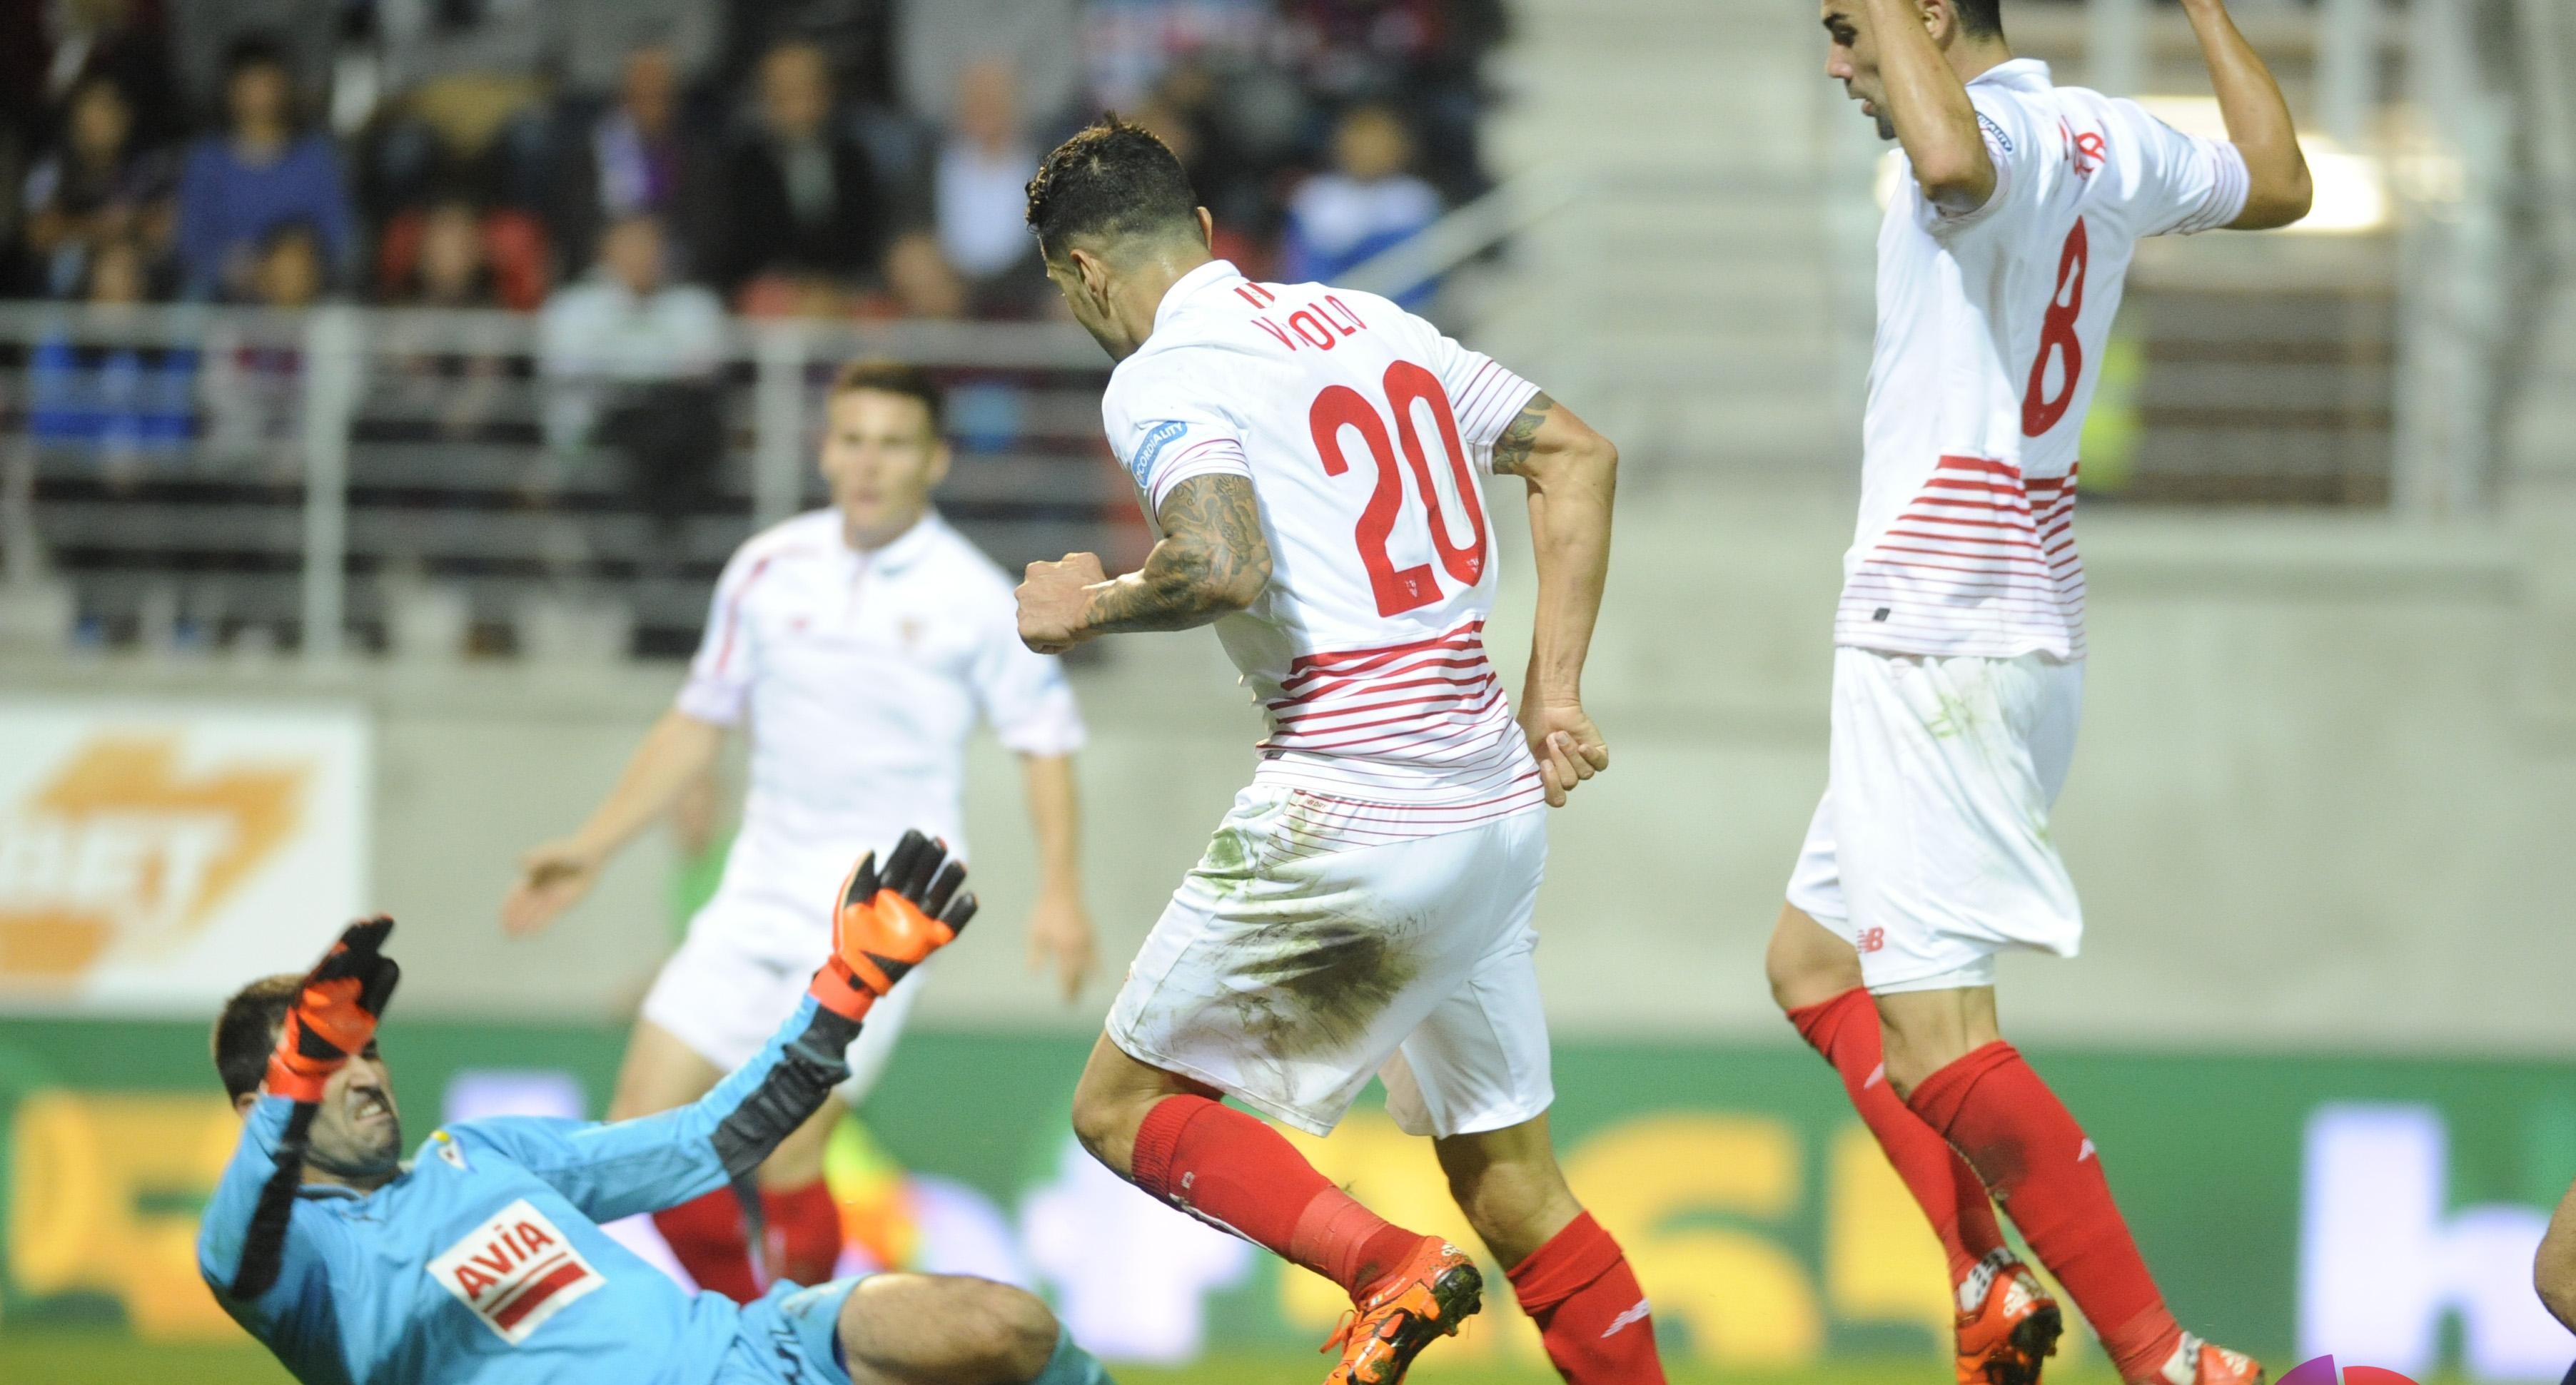 Vitolo, Gameiro e Iborra en una jugada de ataque ante el Eibar